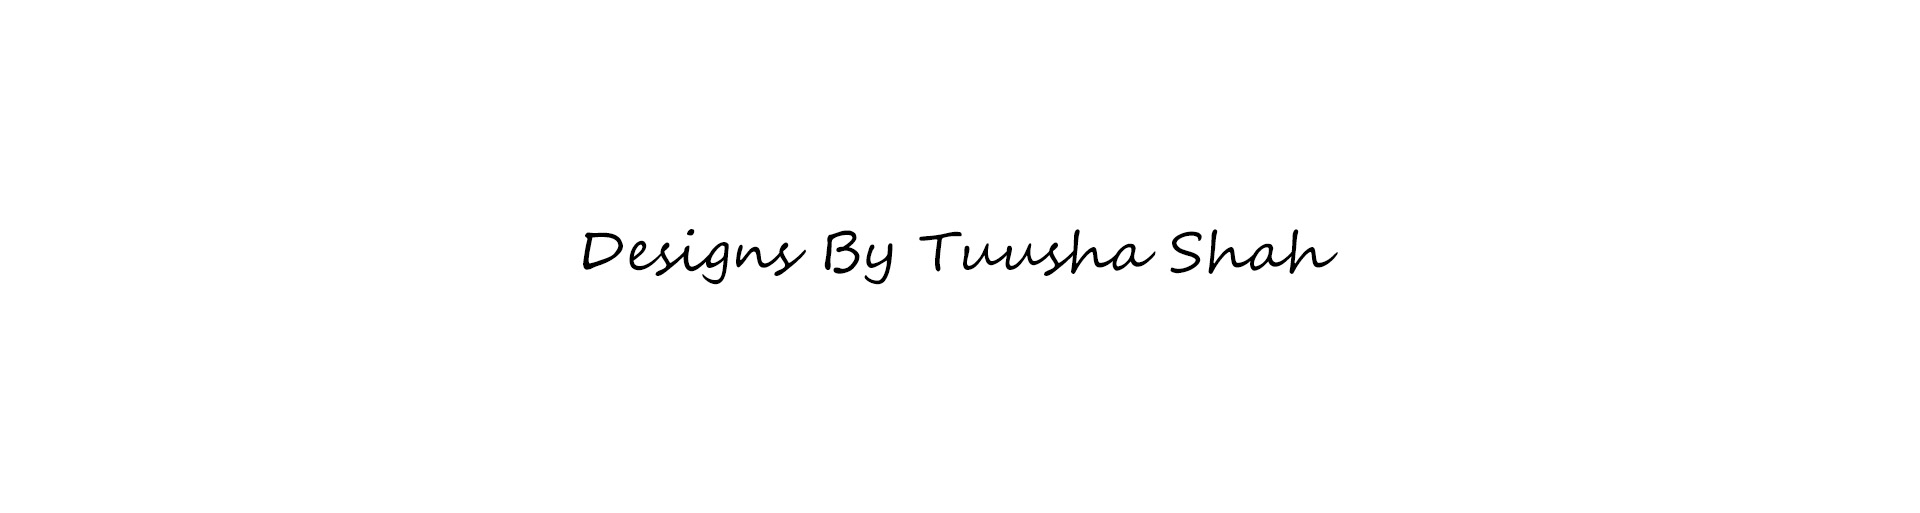 Tuusha Shah